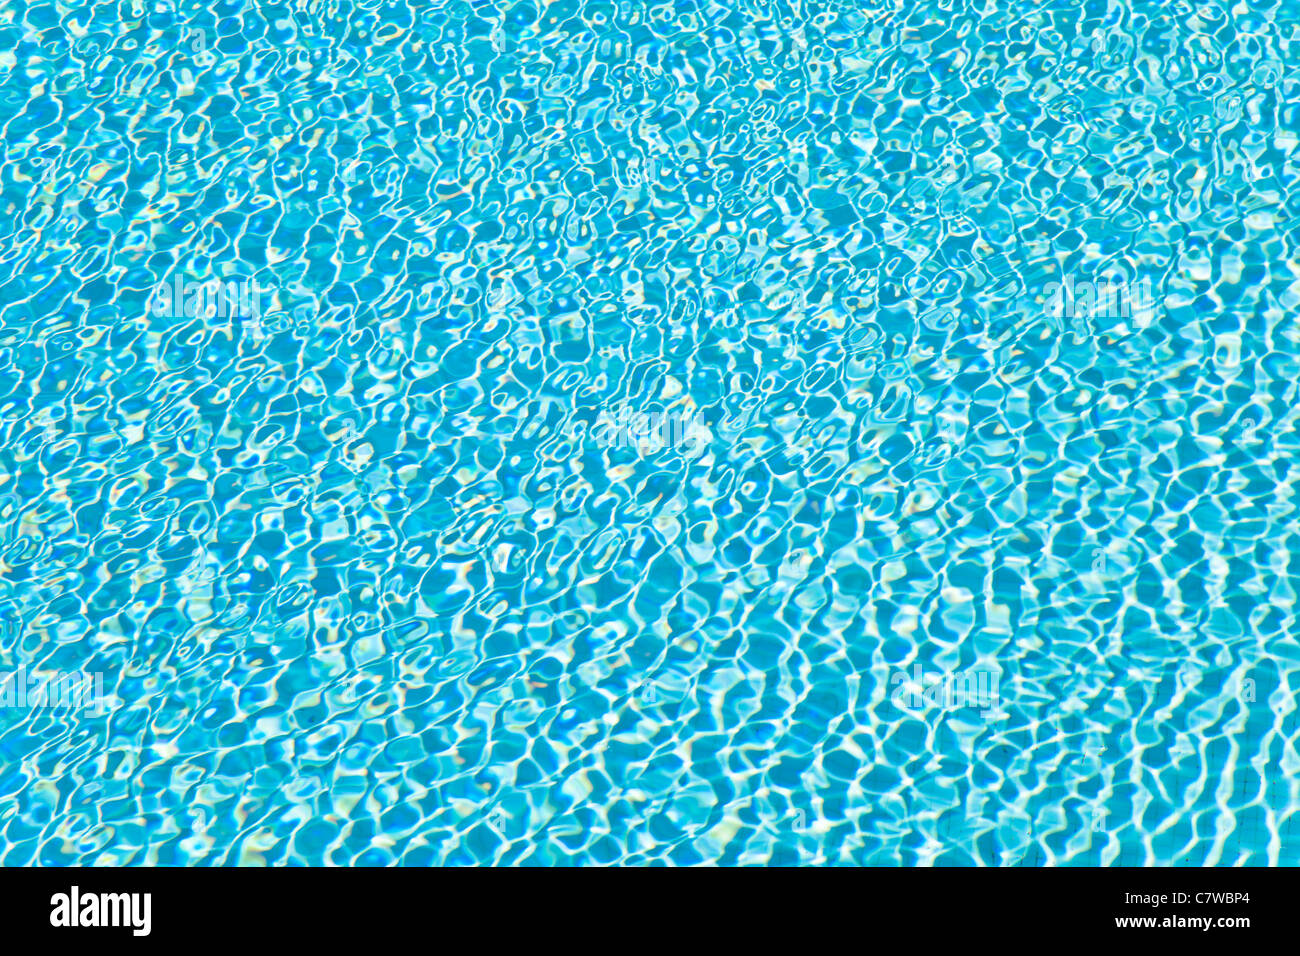 Composizione astratta dell'acqua di piscina e i suoi riflessi Foto Stock